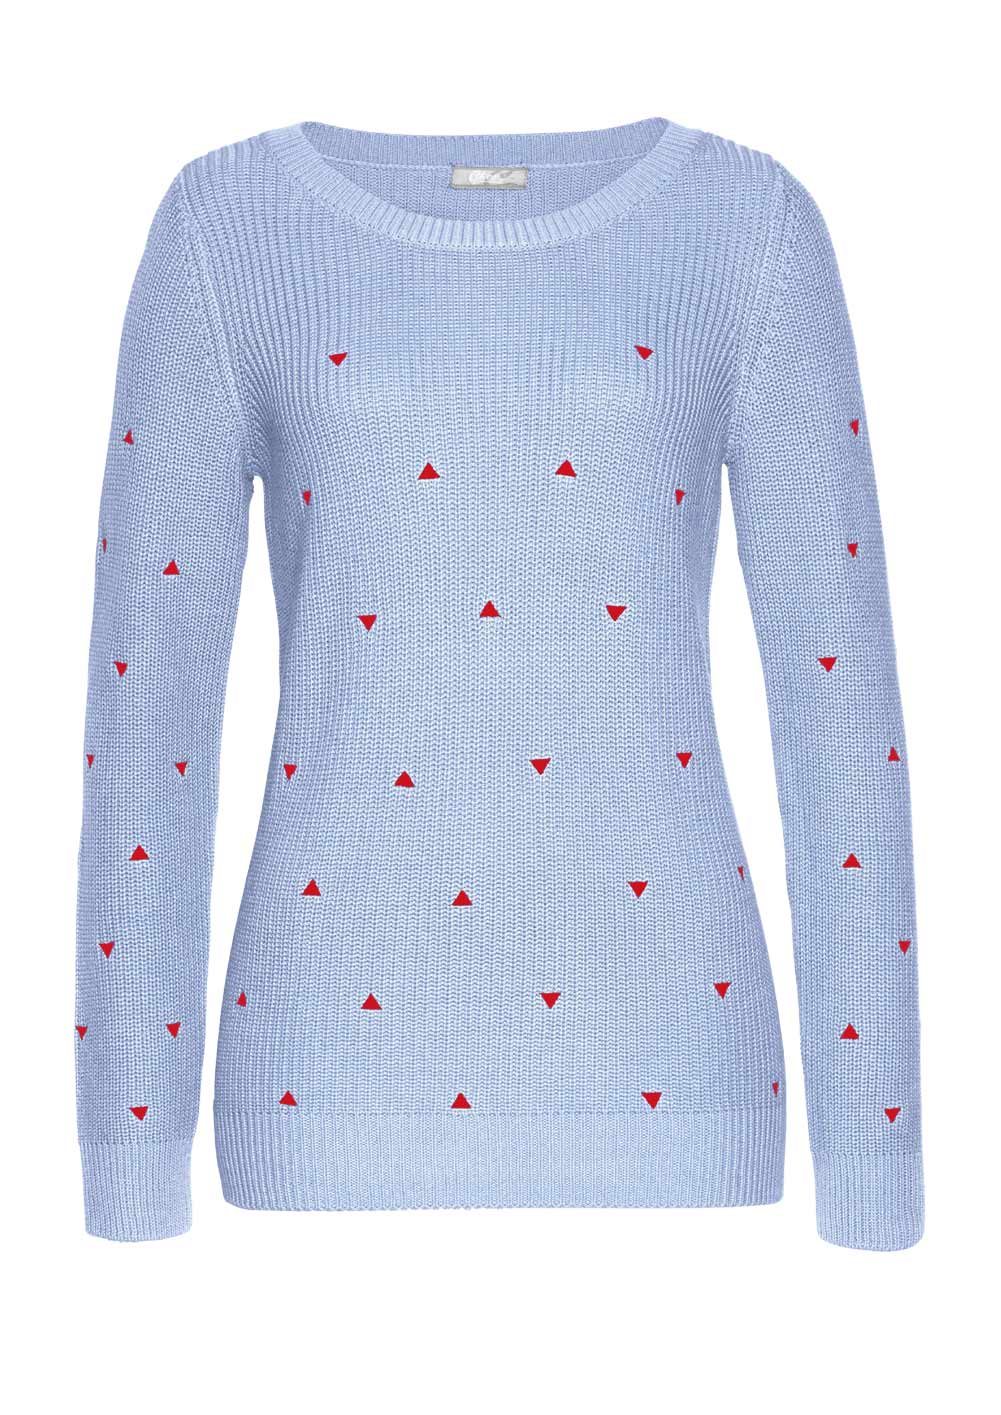 CHEER Damen Pullover mit Stickerei, eisblau-rot